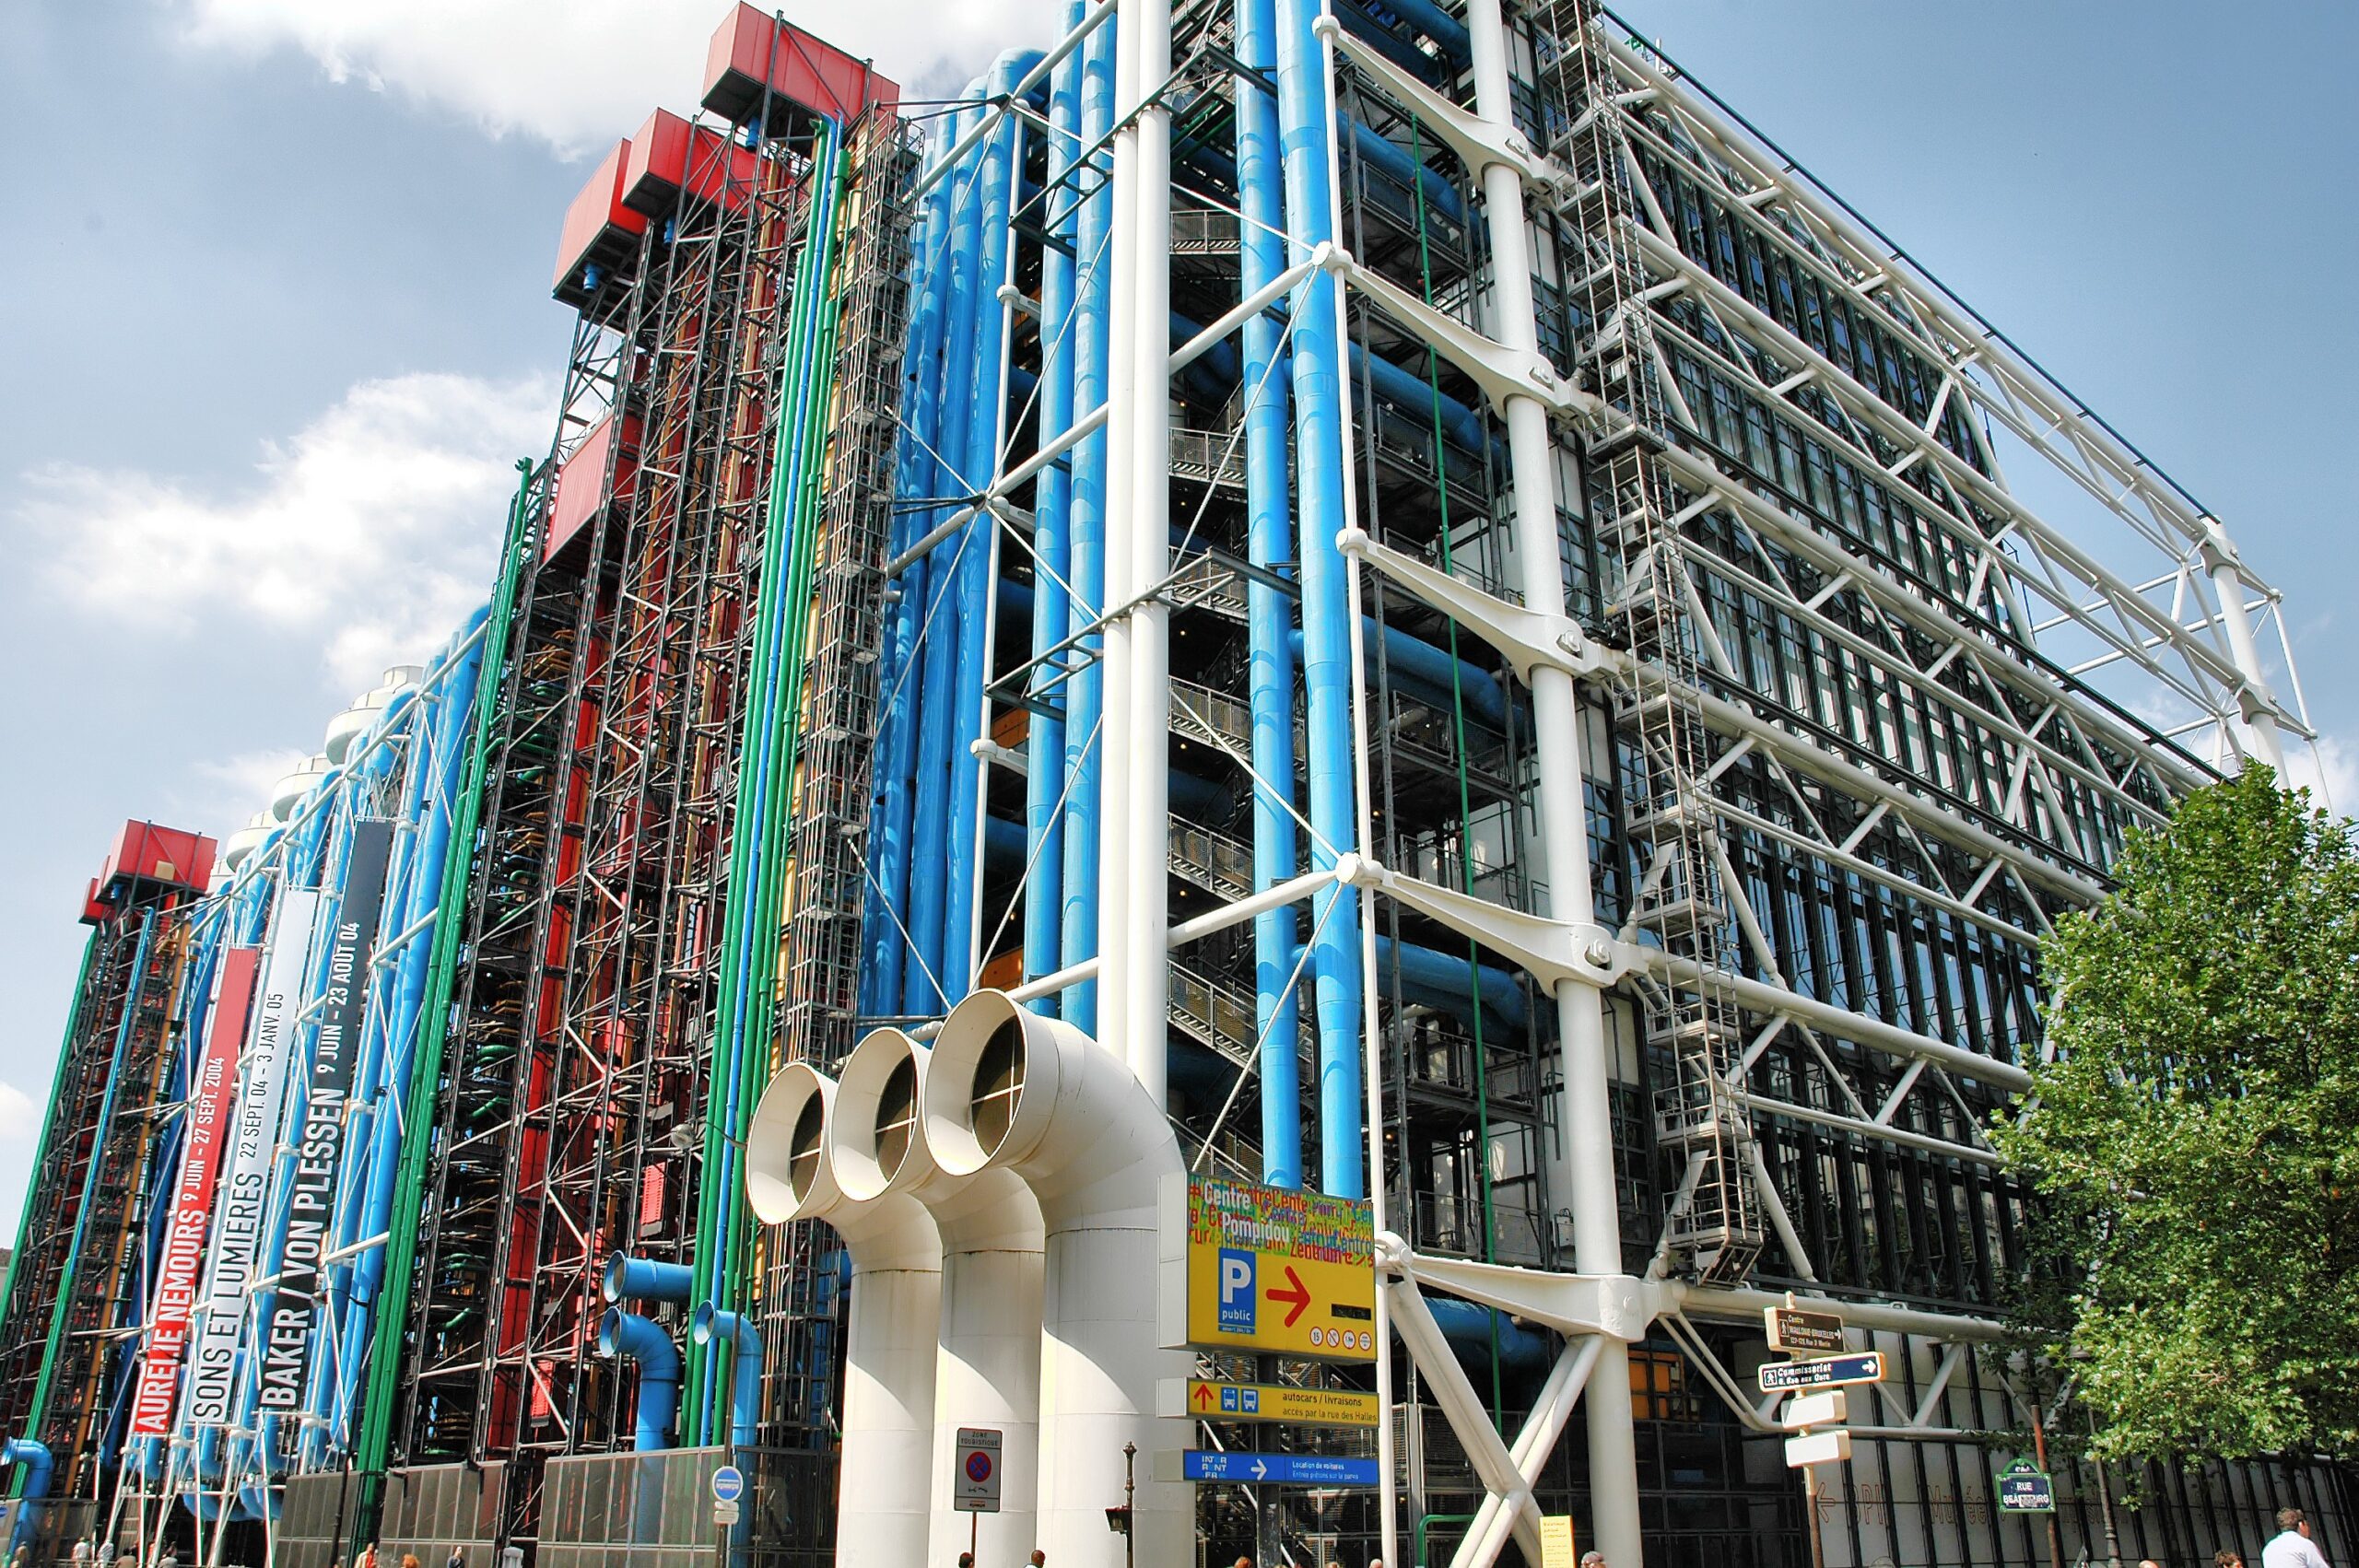 Pompidou Centre - Paris, France